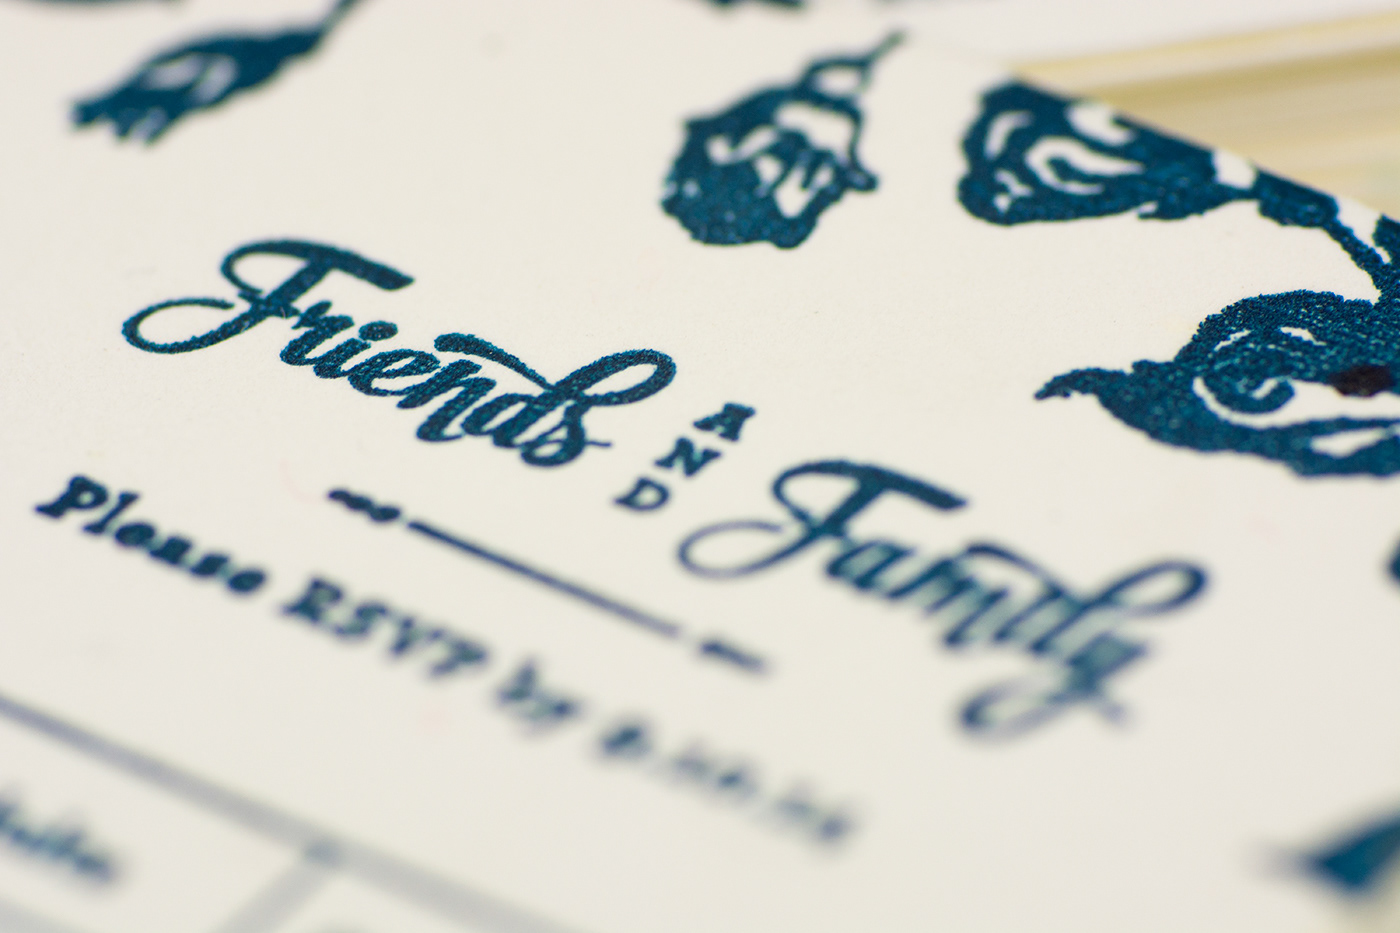 DIY Letterpress letterpress wedding DIY invitations wedding invitations